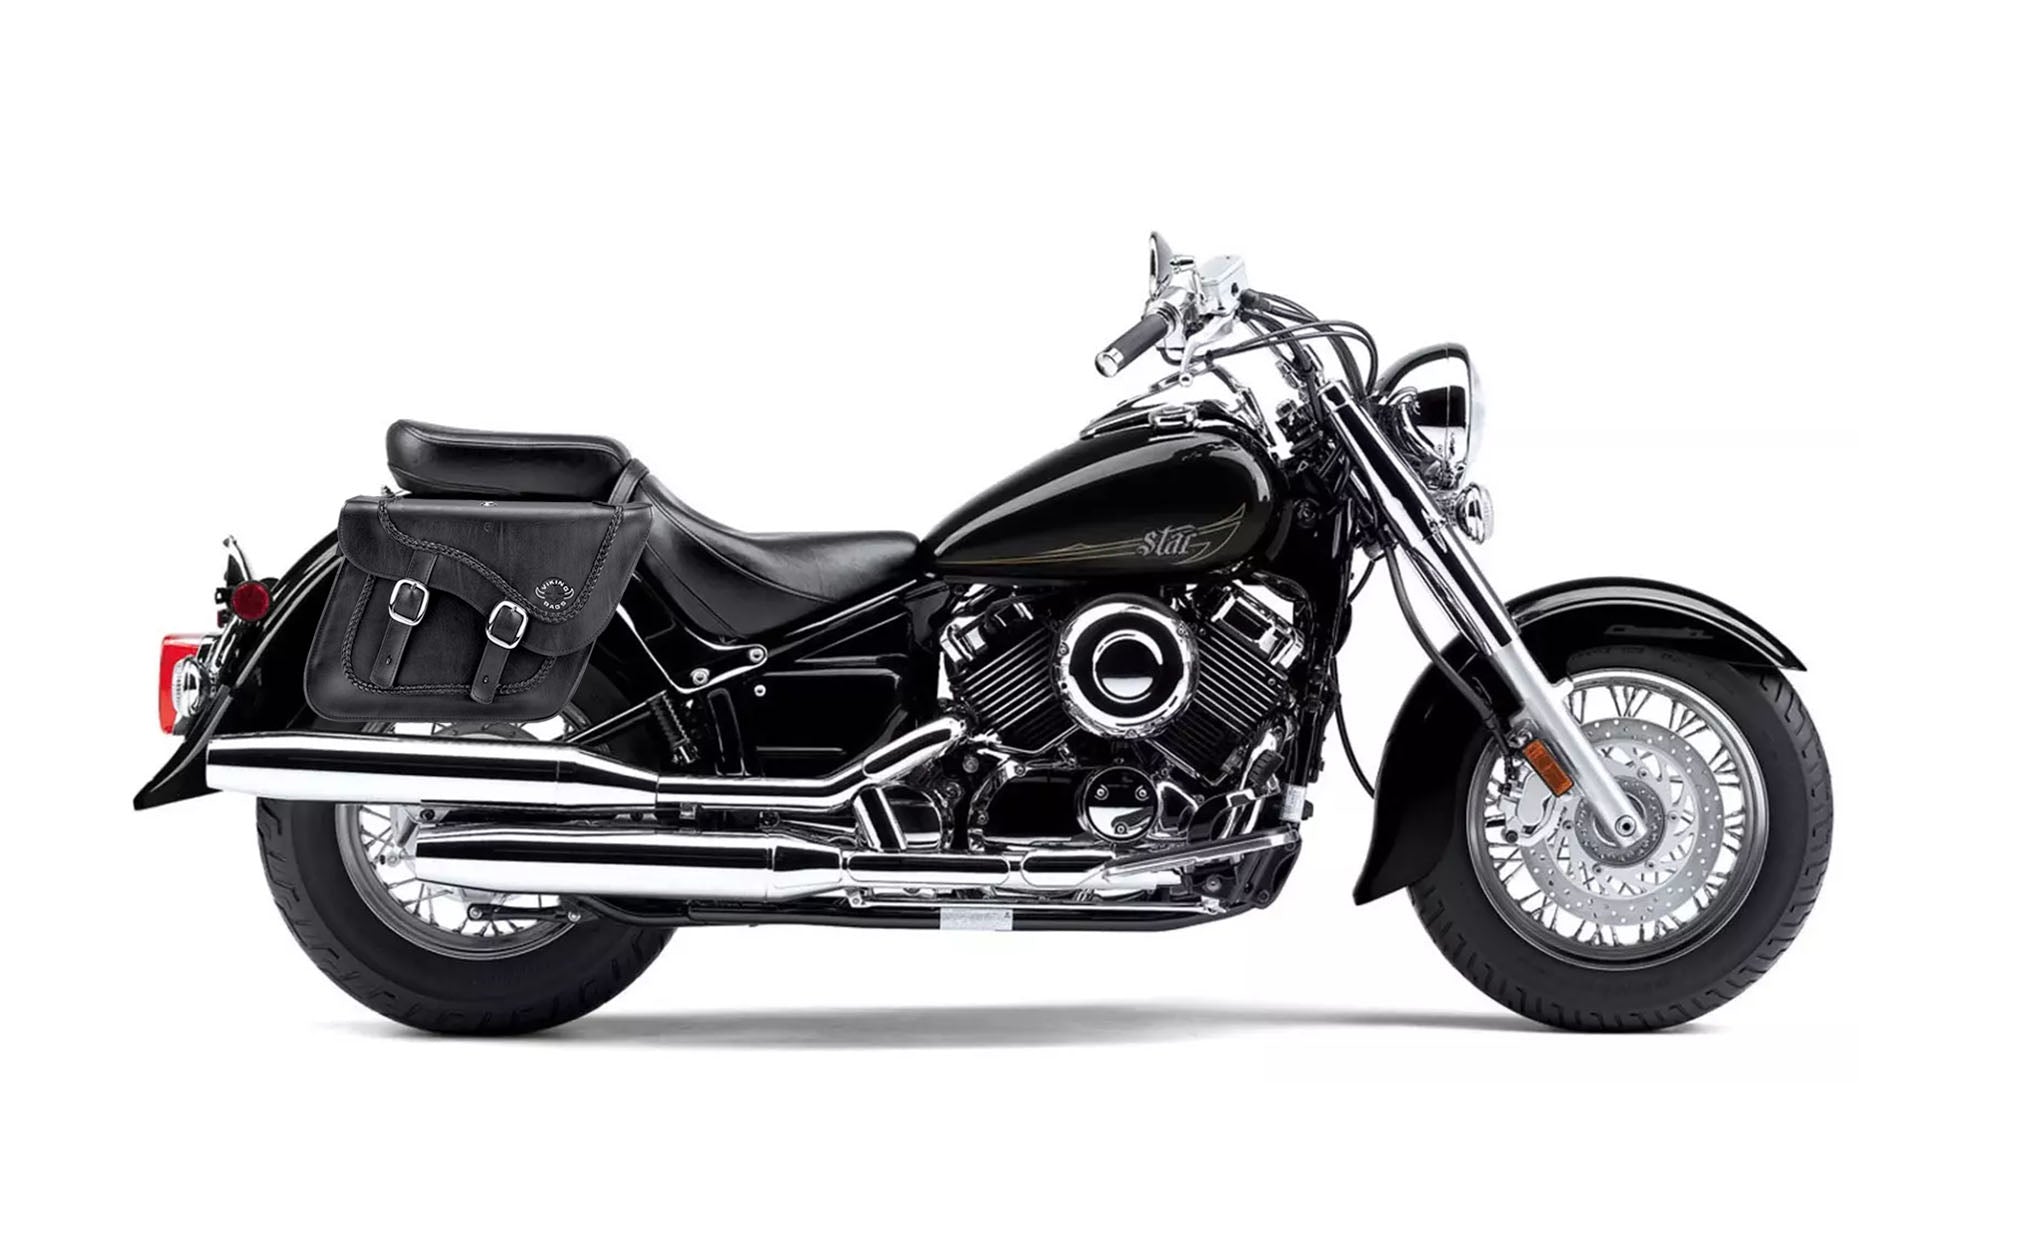 Viking Americano Yamaha V Star 650 Classic Xvs65A Braided Large Leather Motorcycle Saddlebags on Bike Photo @expand